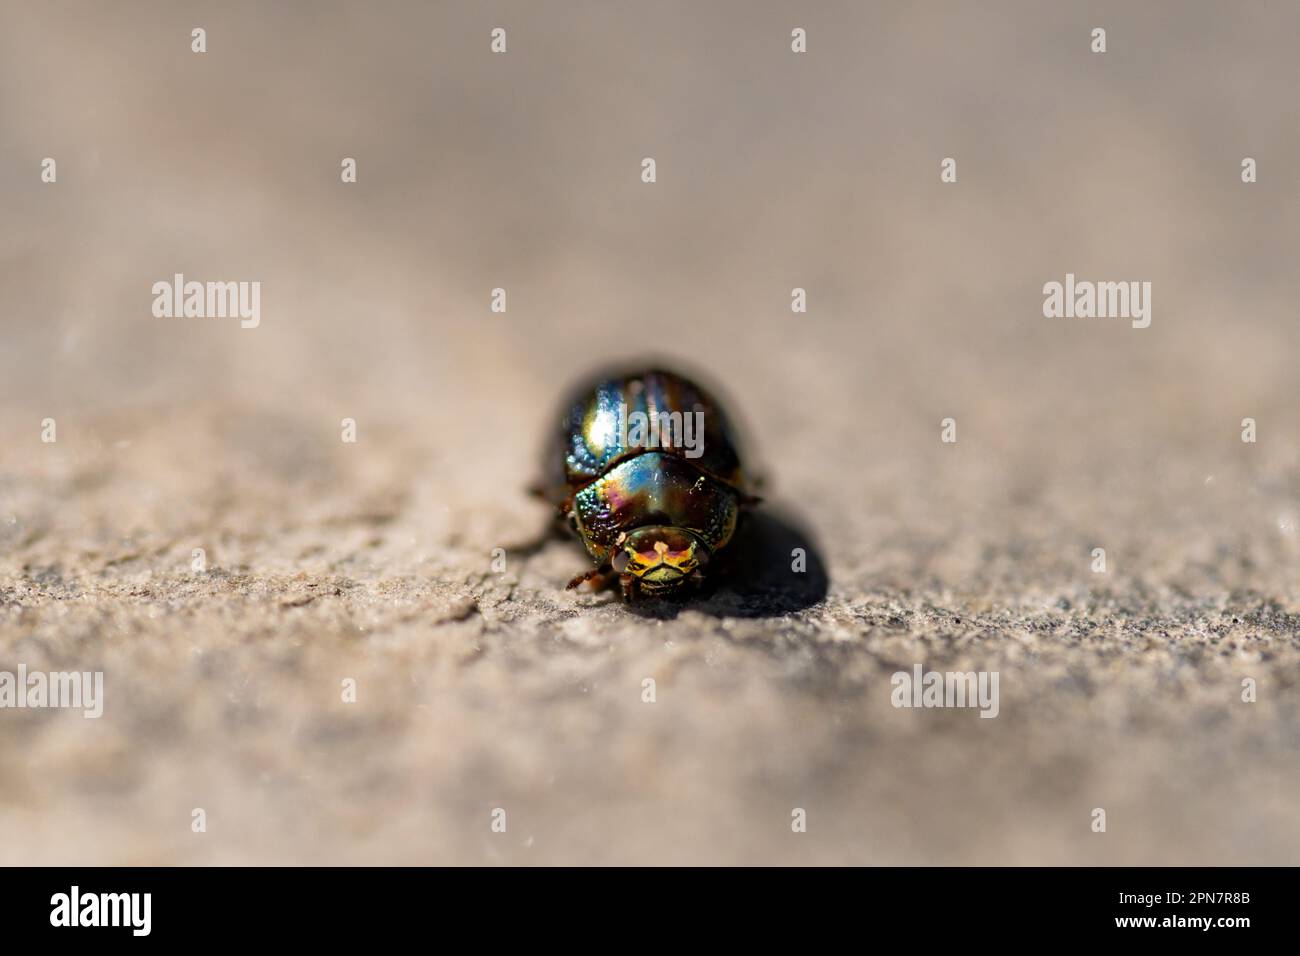 Chrysolina americana-Insekt oder Rosmarin-Käfer, der gerade nach vorn blickt, mit seinen Augen zur Kamera Stockfoto